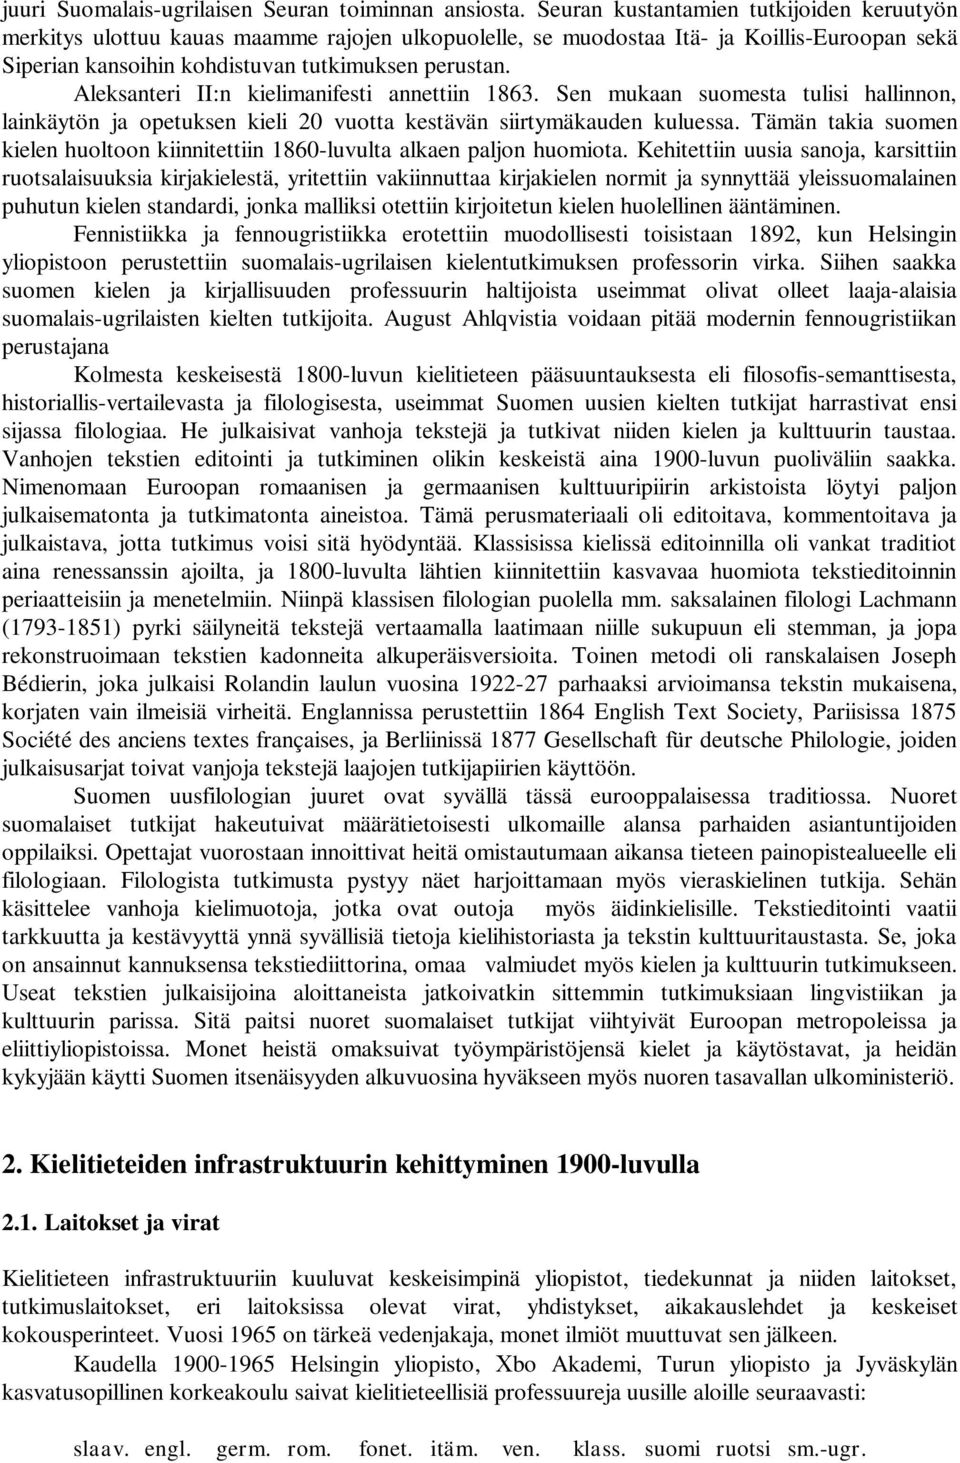 Aleksanteri II:n kielimanifesti annettiin 1863. Sen mukaan suomesta tulisi hallinnon, lainkäytön ja opetuksen kieli 20 vuotta kestävän siirtymäkauden kuluessa.